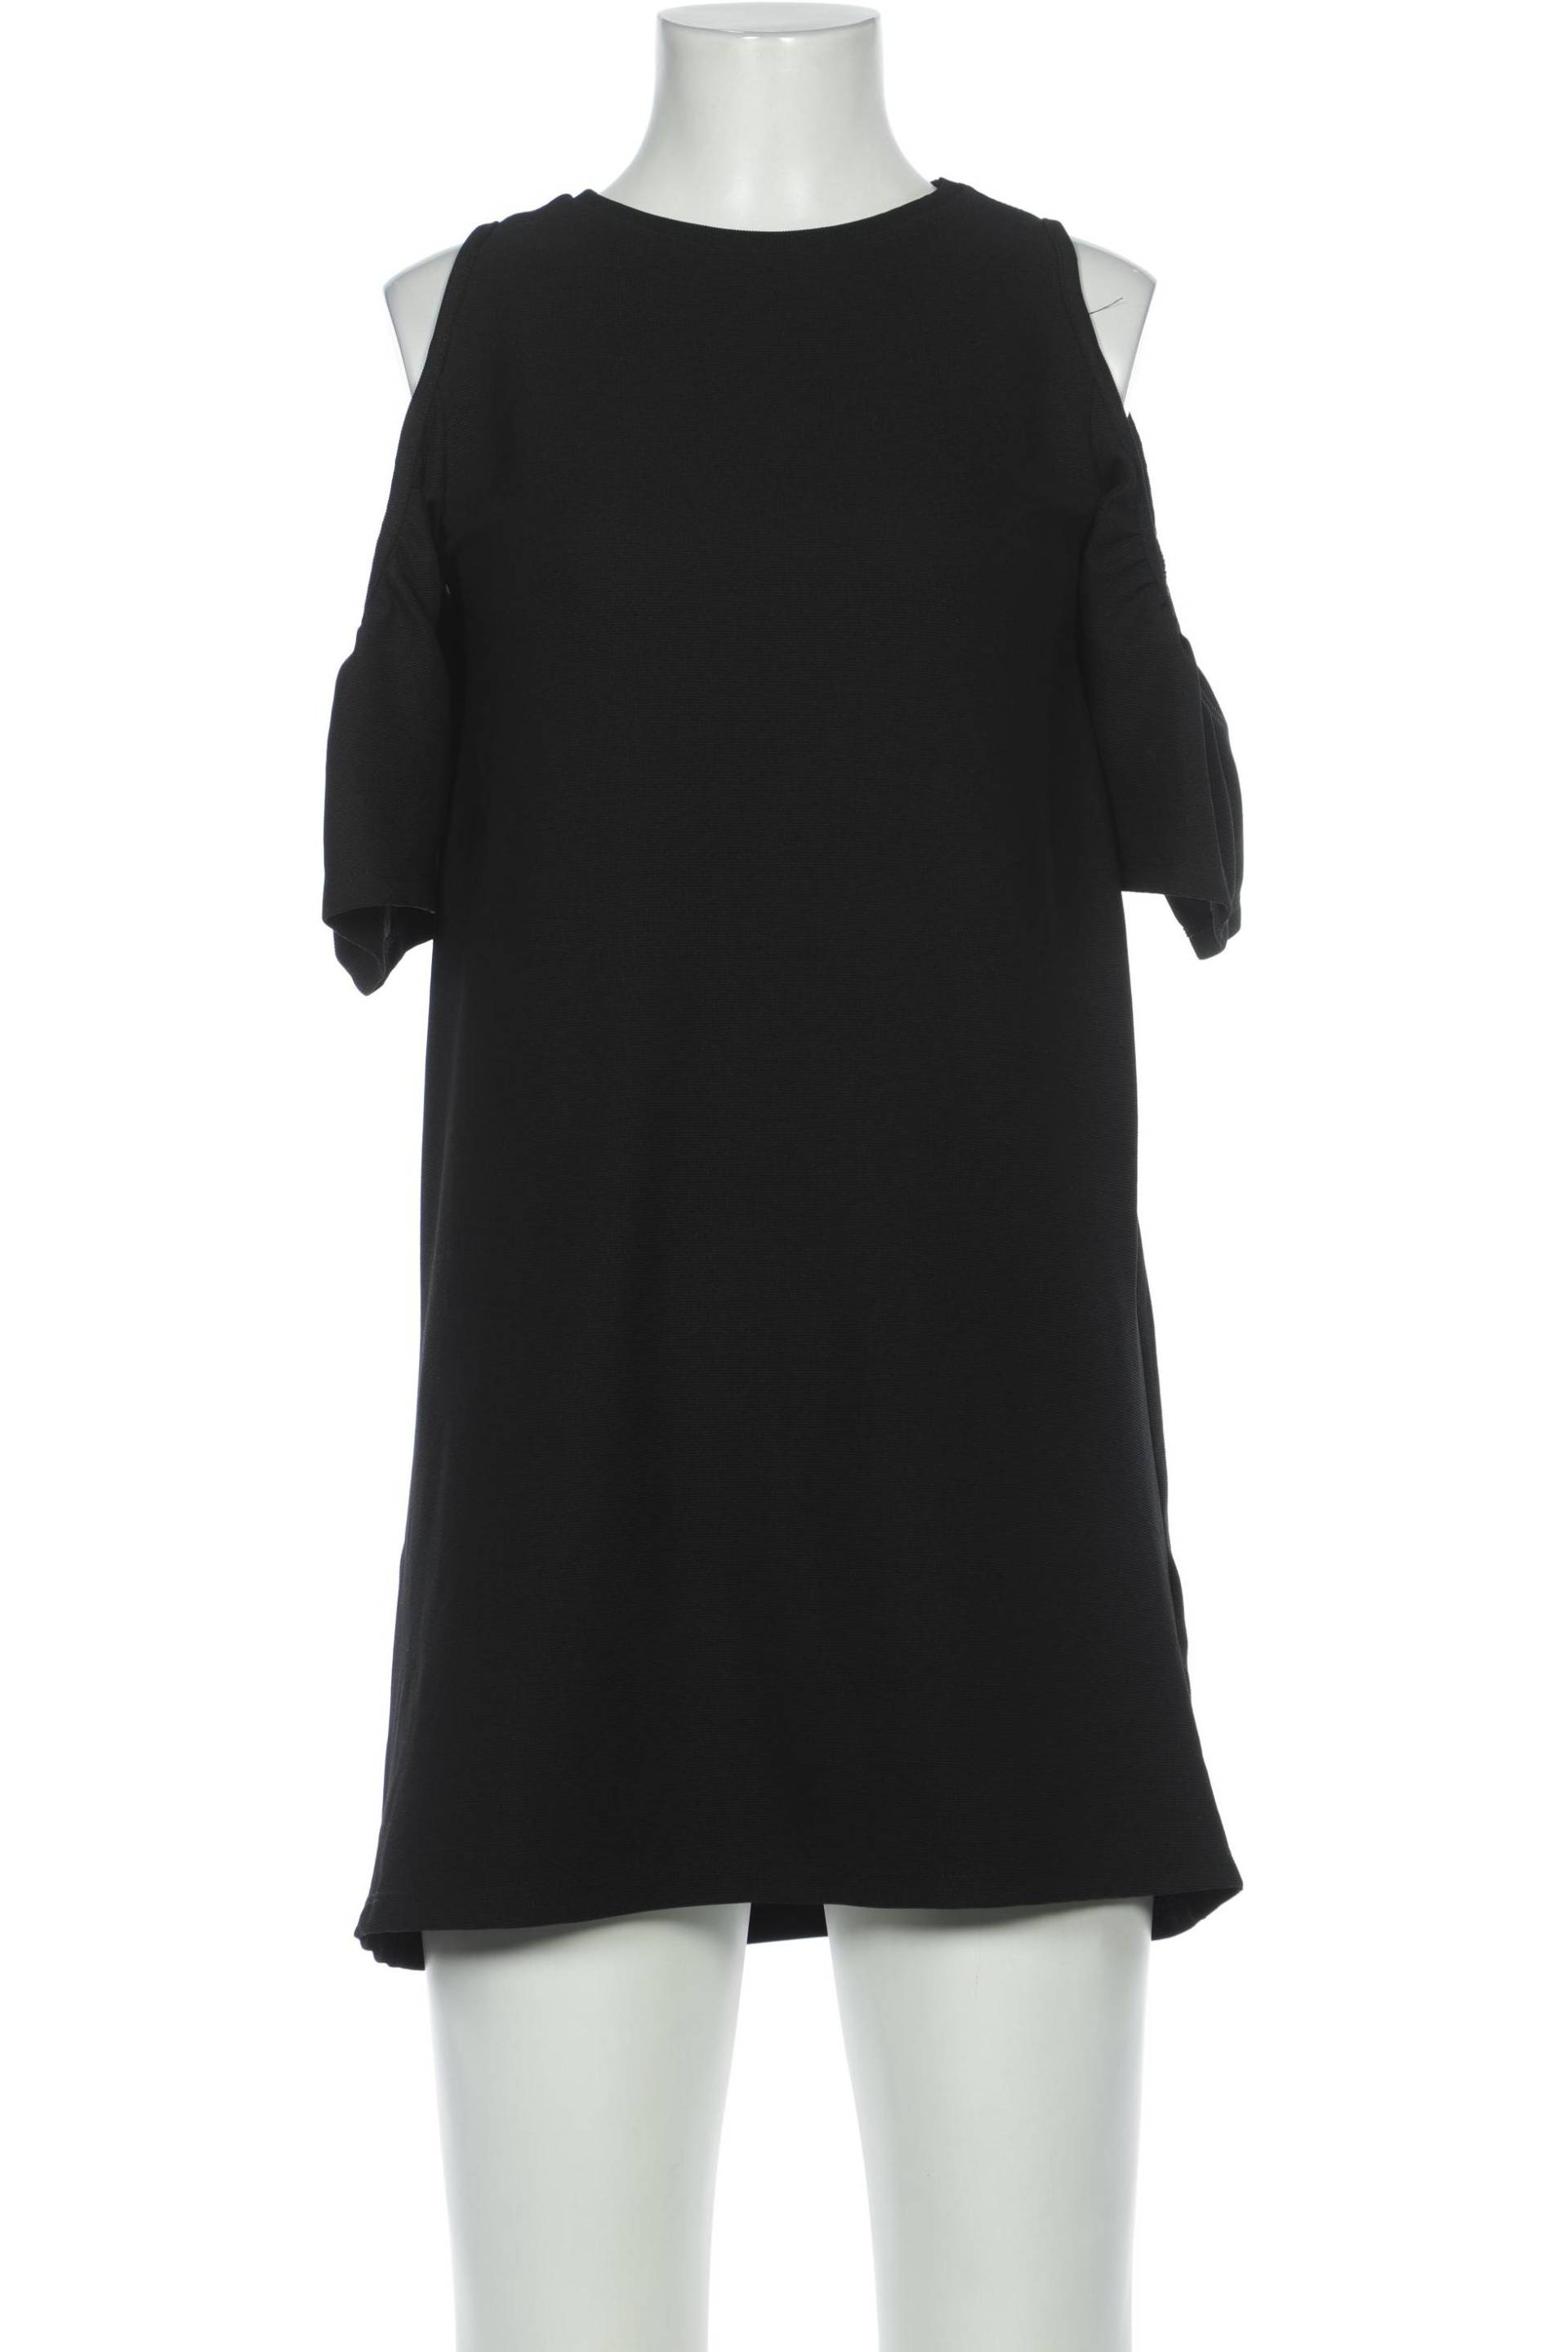 TRF by Zara Damen Kleid, schwarz, Gr. 36 von TRF by Zara